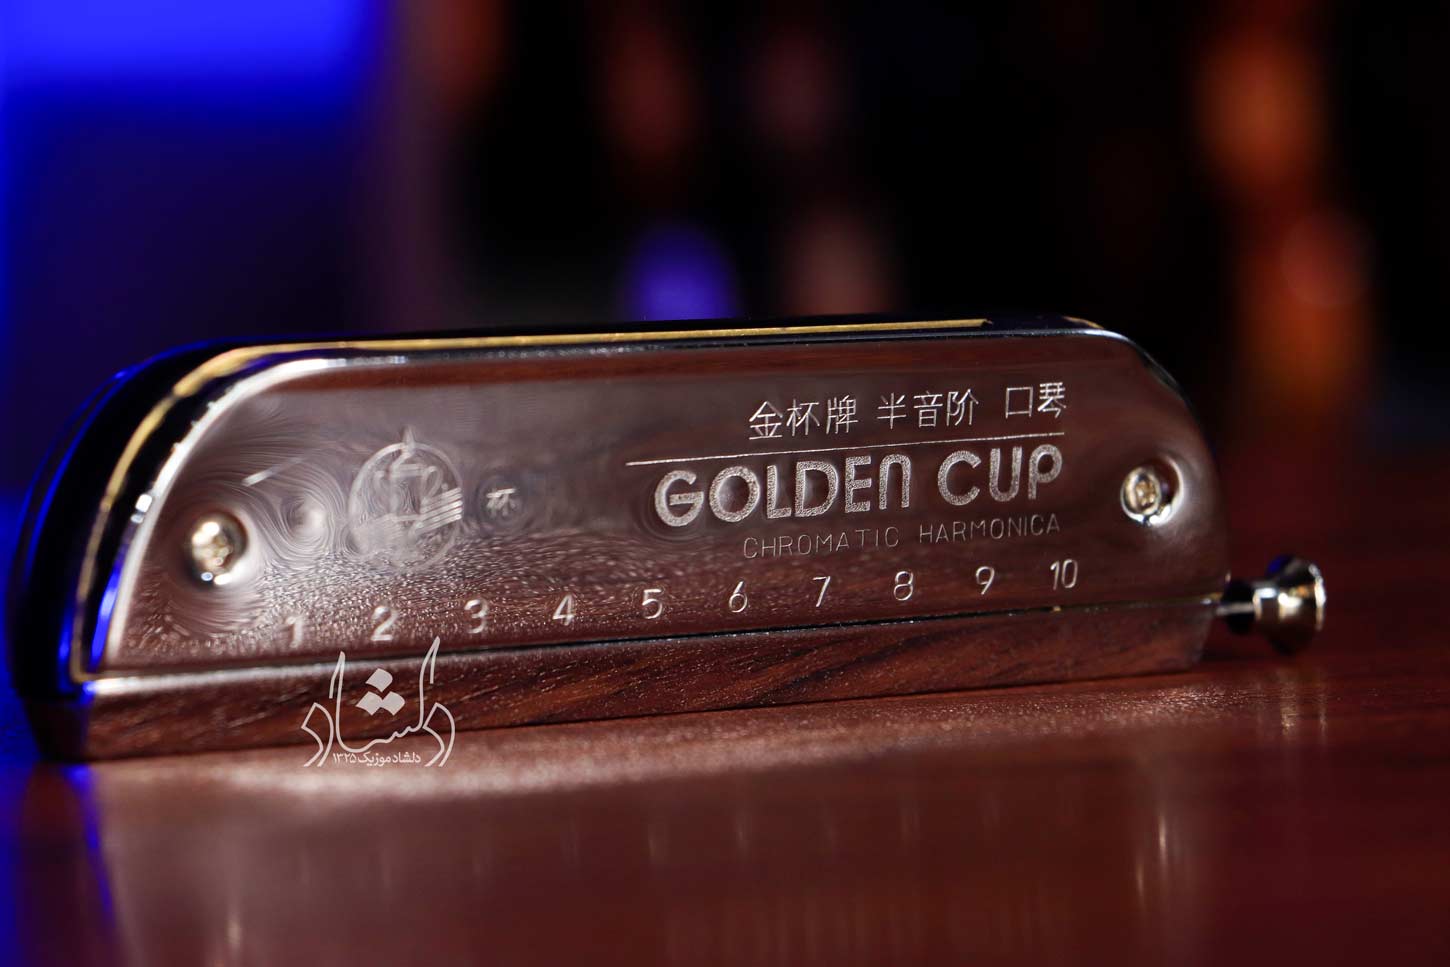 سازدهنی کروماتیک Golden Cup-1040